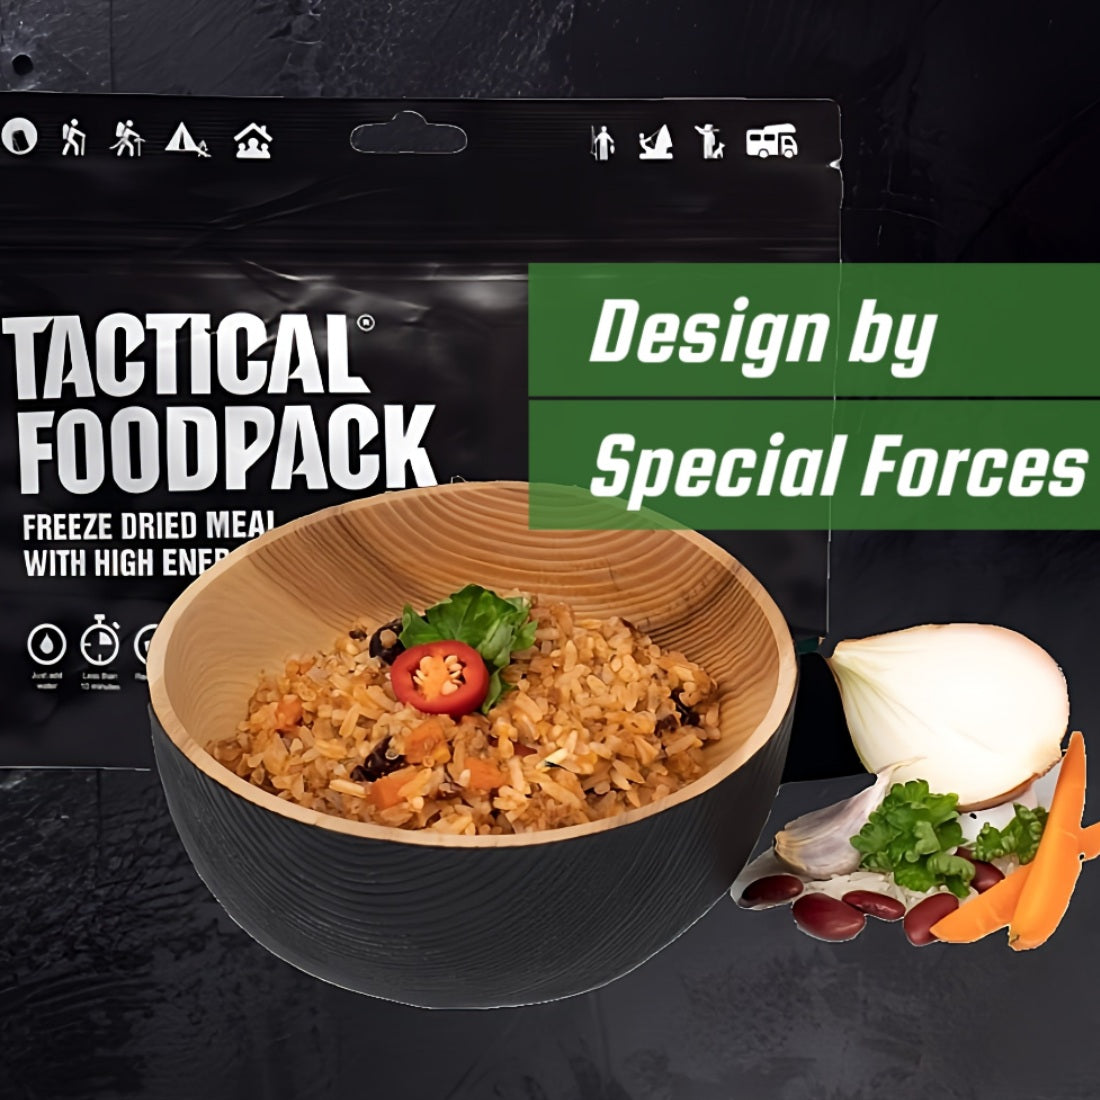 Tactical Foodpack Beef Spaghetti Bolognese - Taktische Notfallnahrung für Spezialkräfte in Krisensituationen